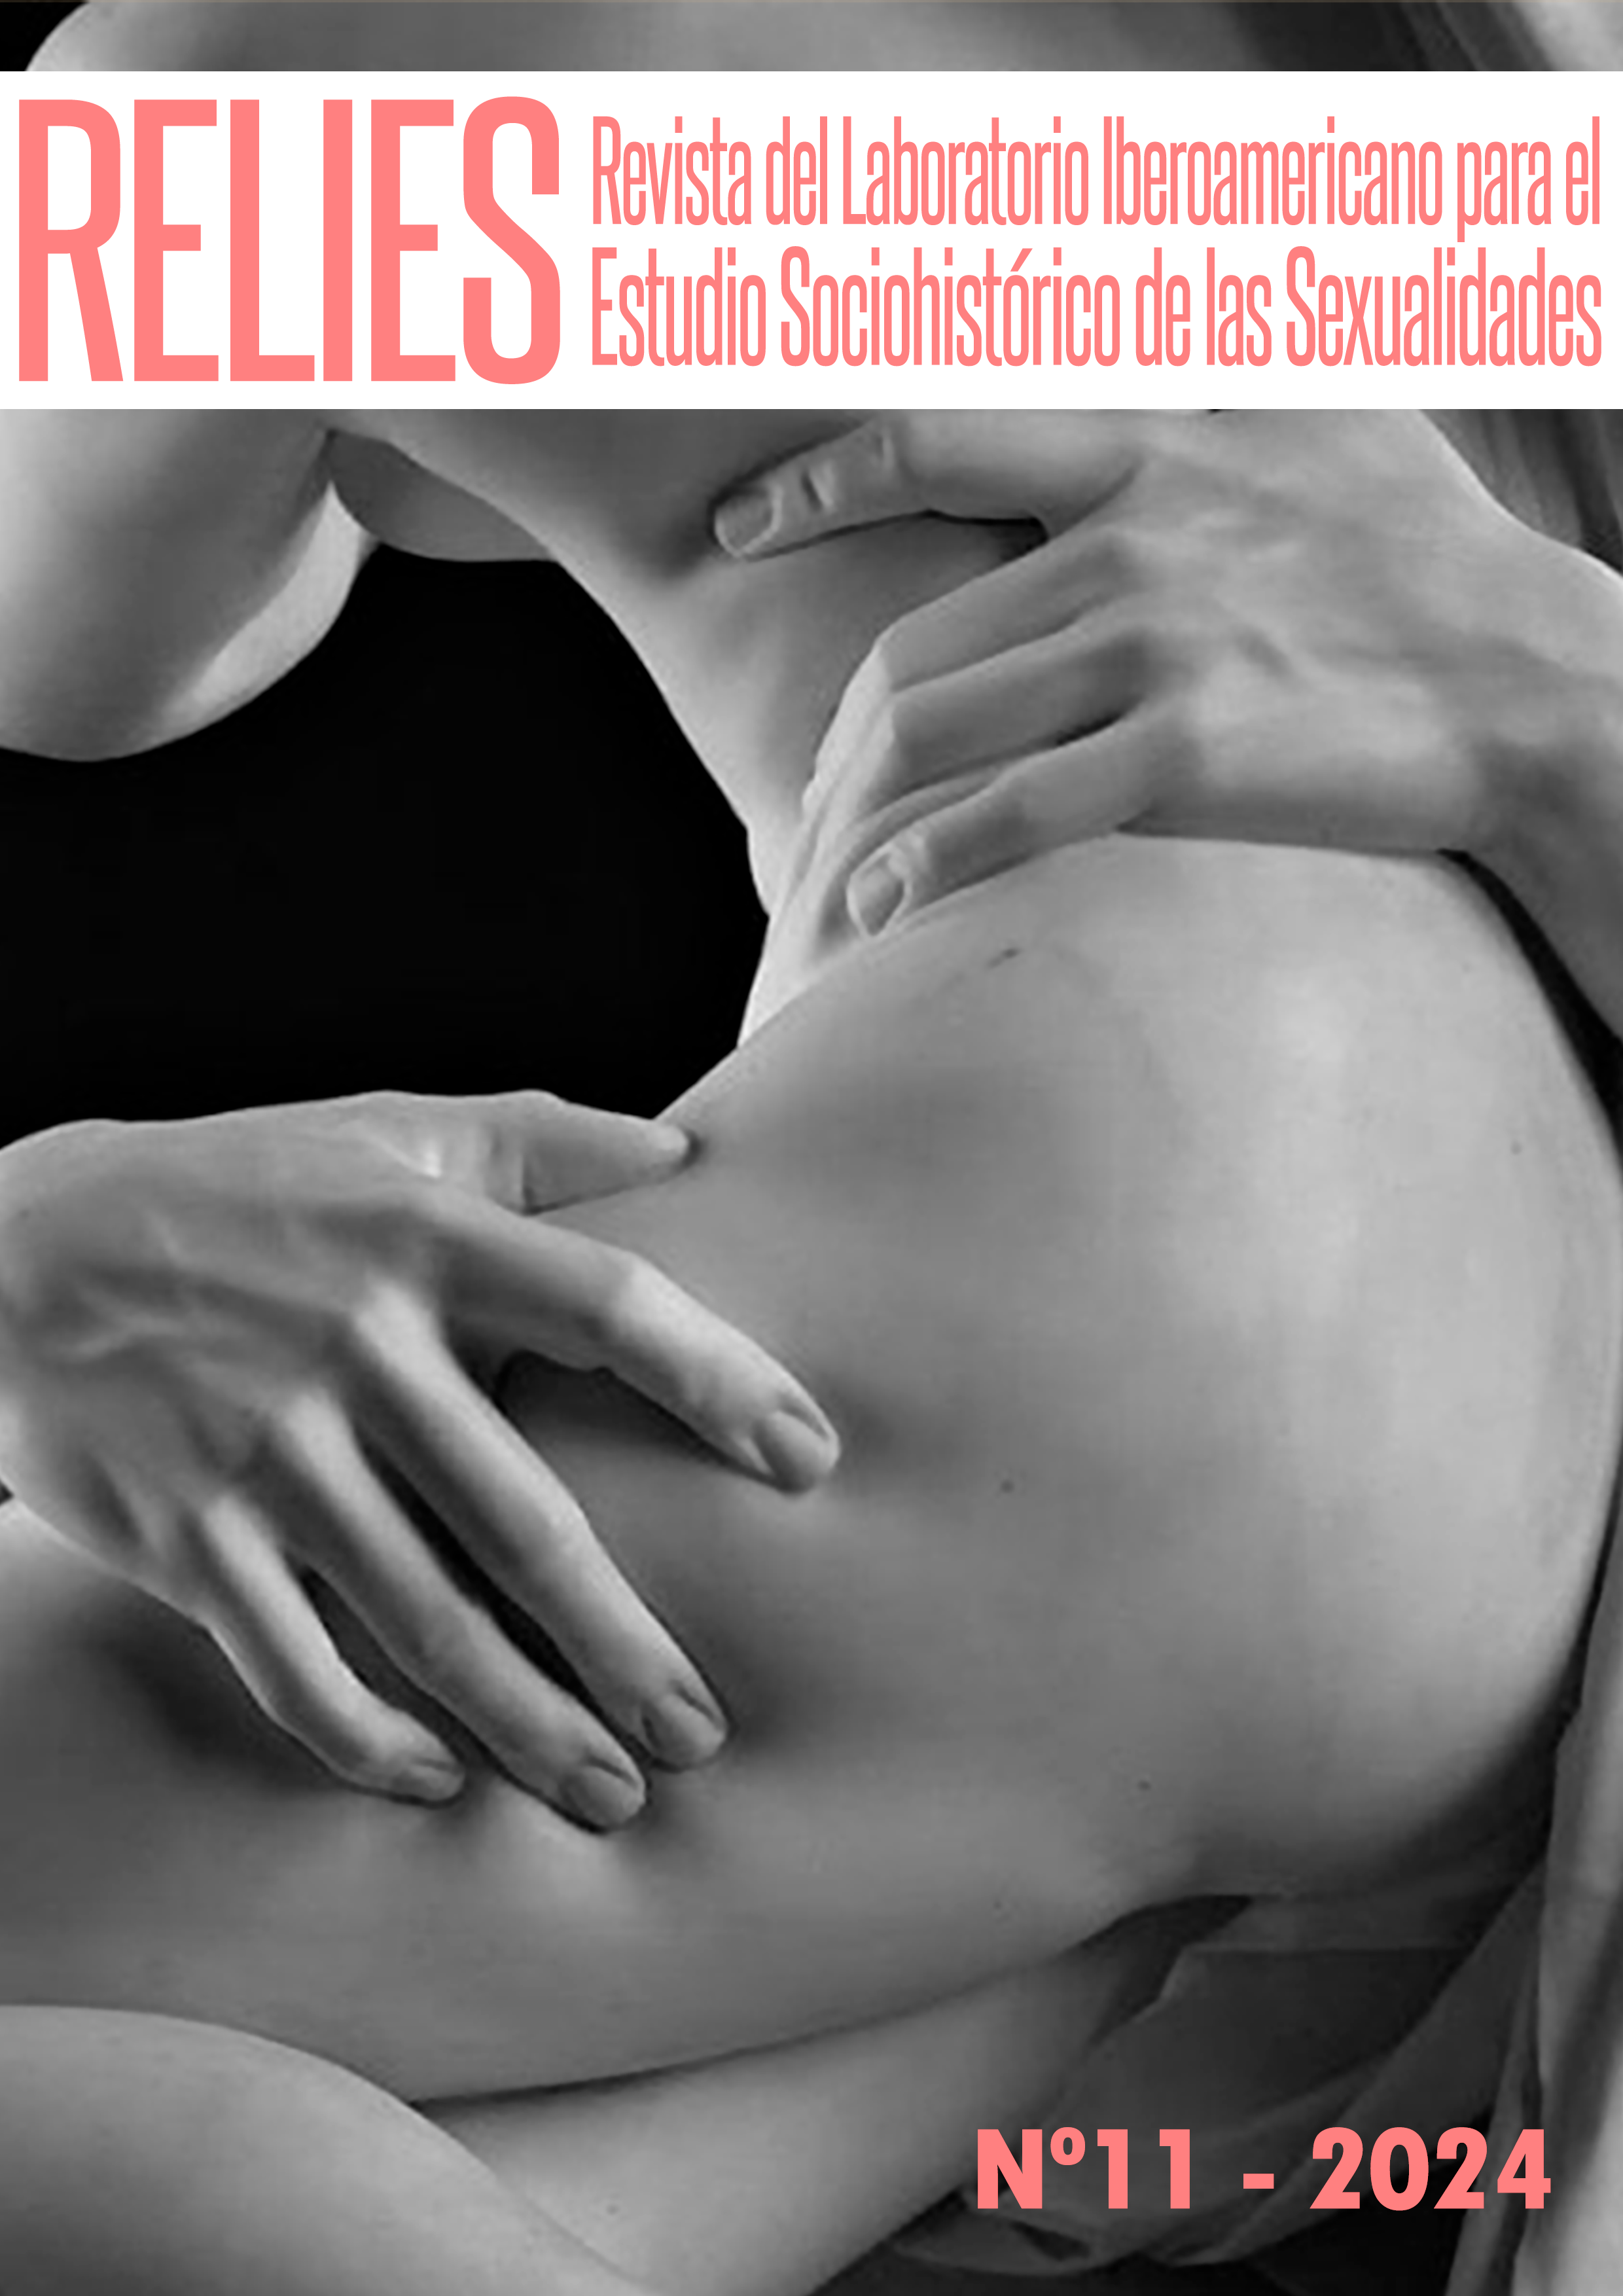 					Ver Núm. 11 (2024): RELIES. Revista del Laboratorio Iberoamericano para el Estudio Sociohistórico de las Sexualidades (EN PRENSA)
				